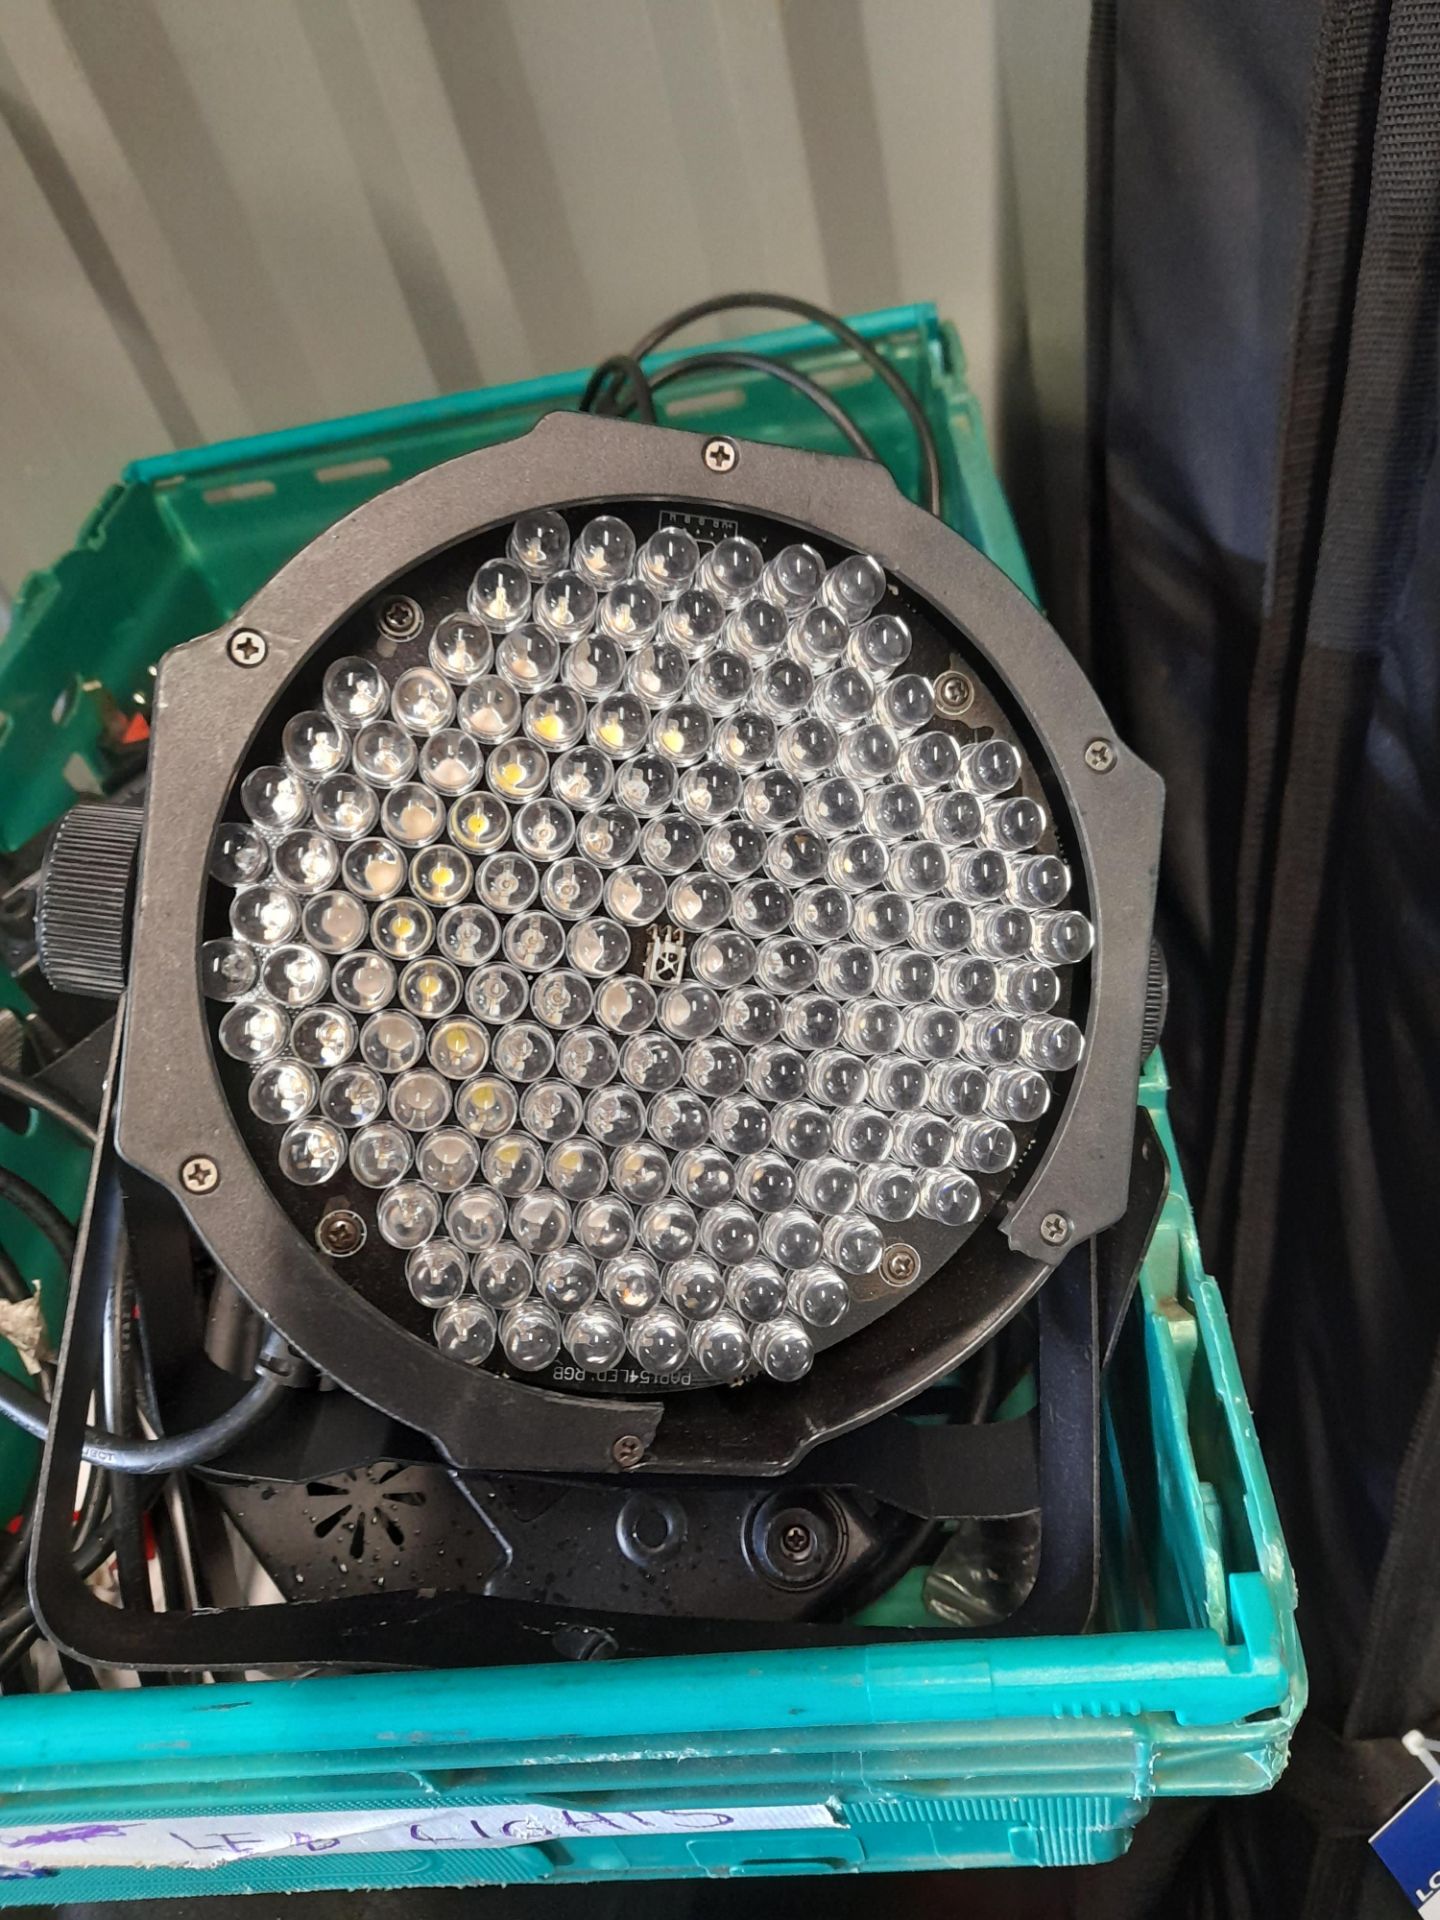 12 x Beamx FlatPar 154 LED uplighters - Image 2 of 4